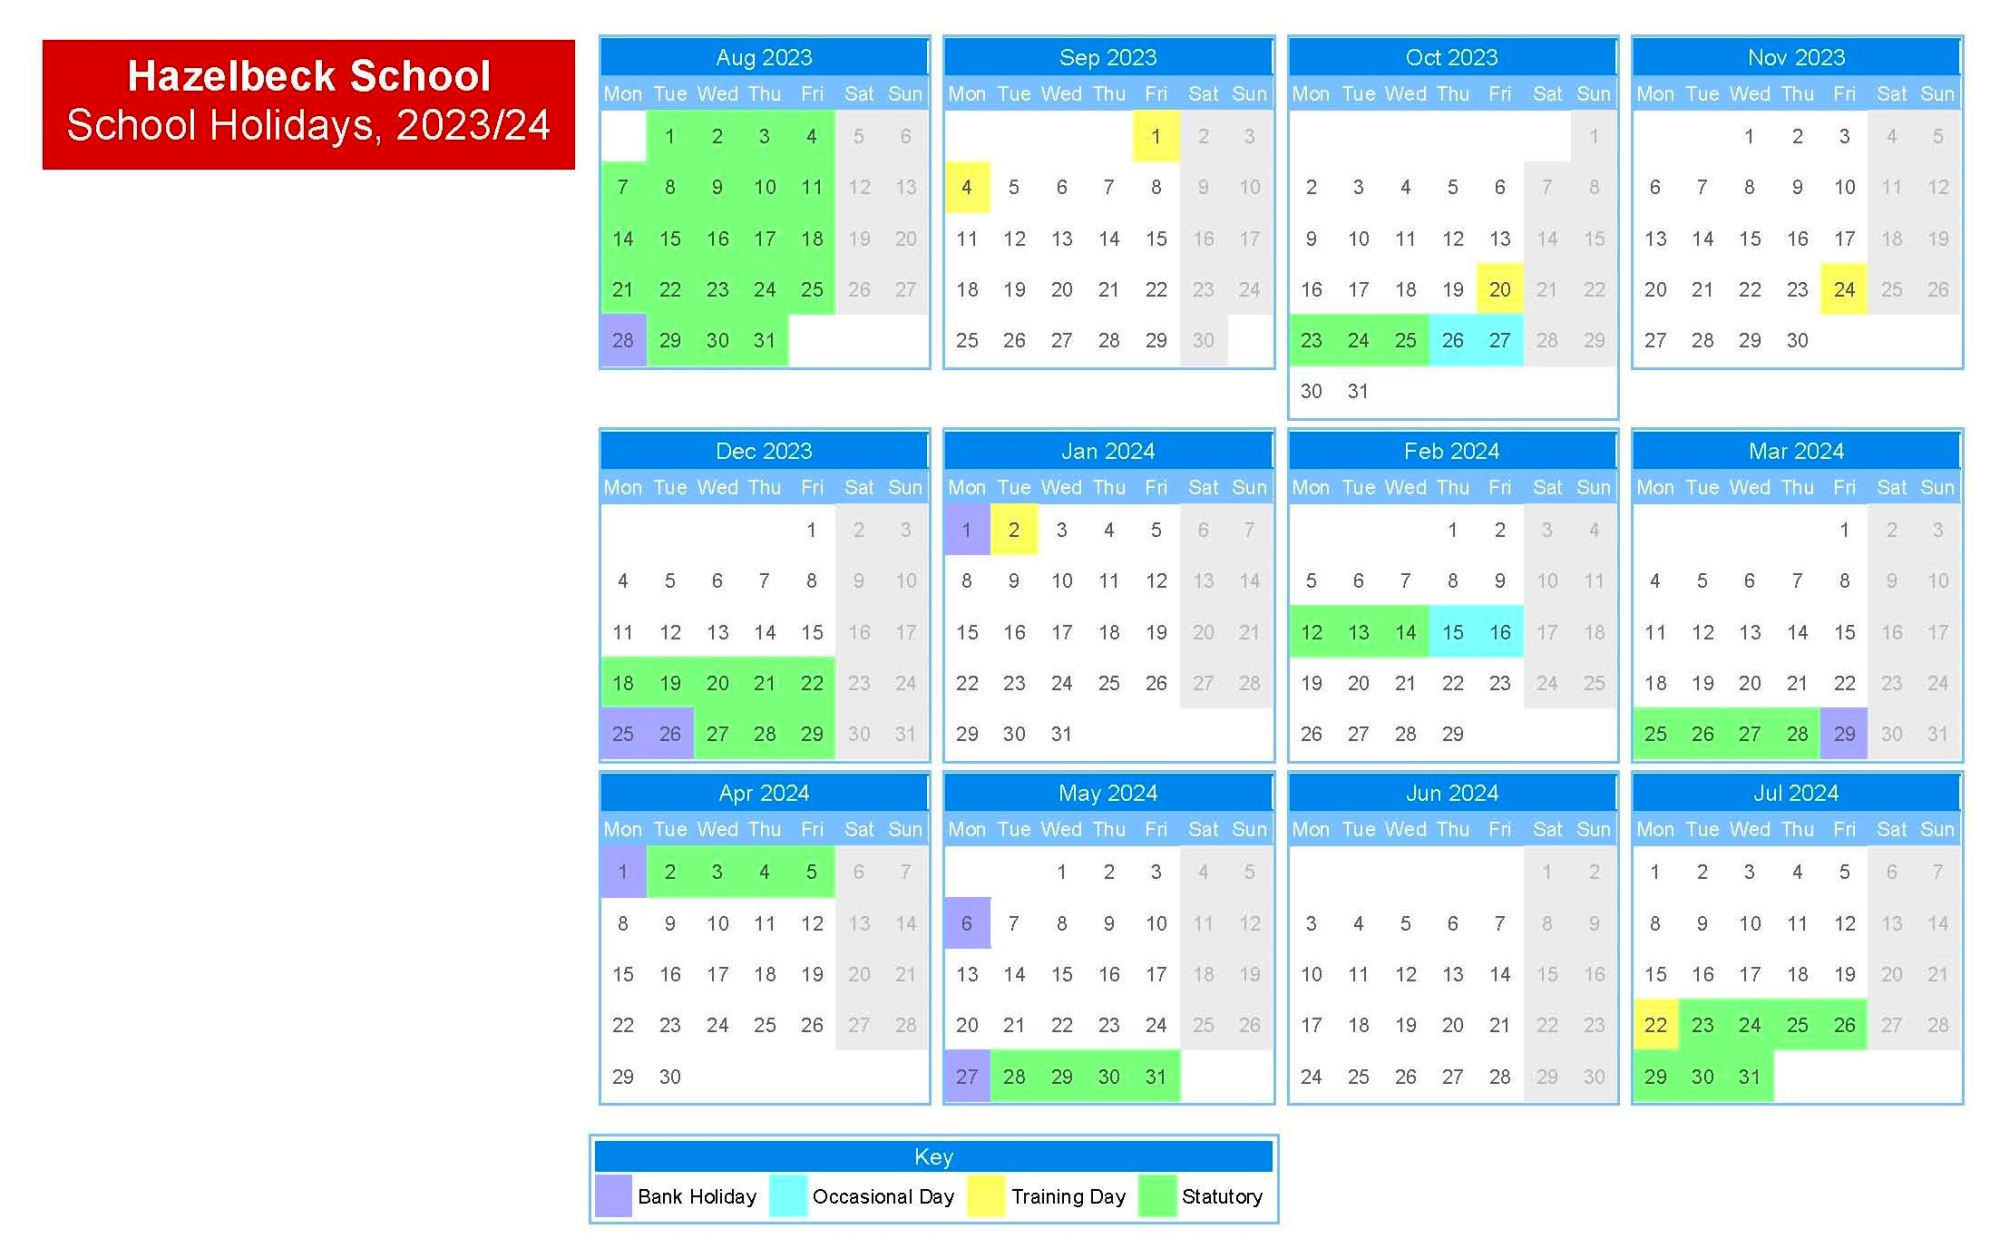 Hazelbeck School Holiday Dates